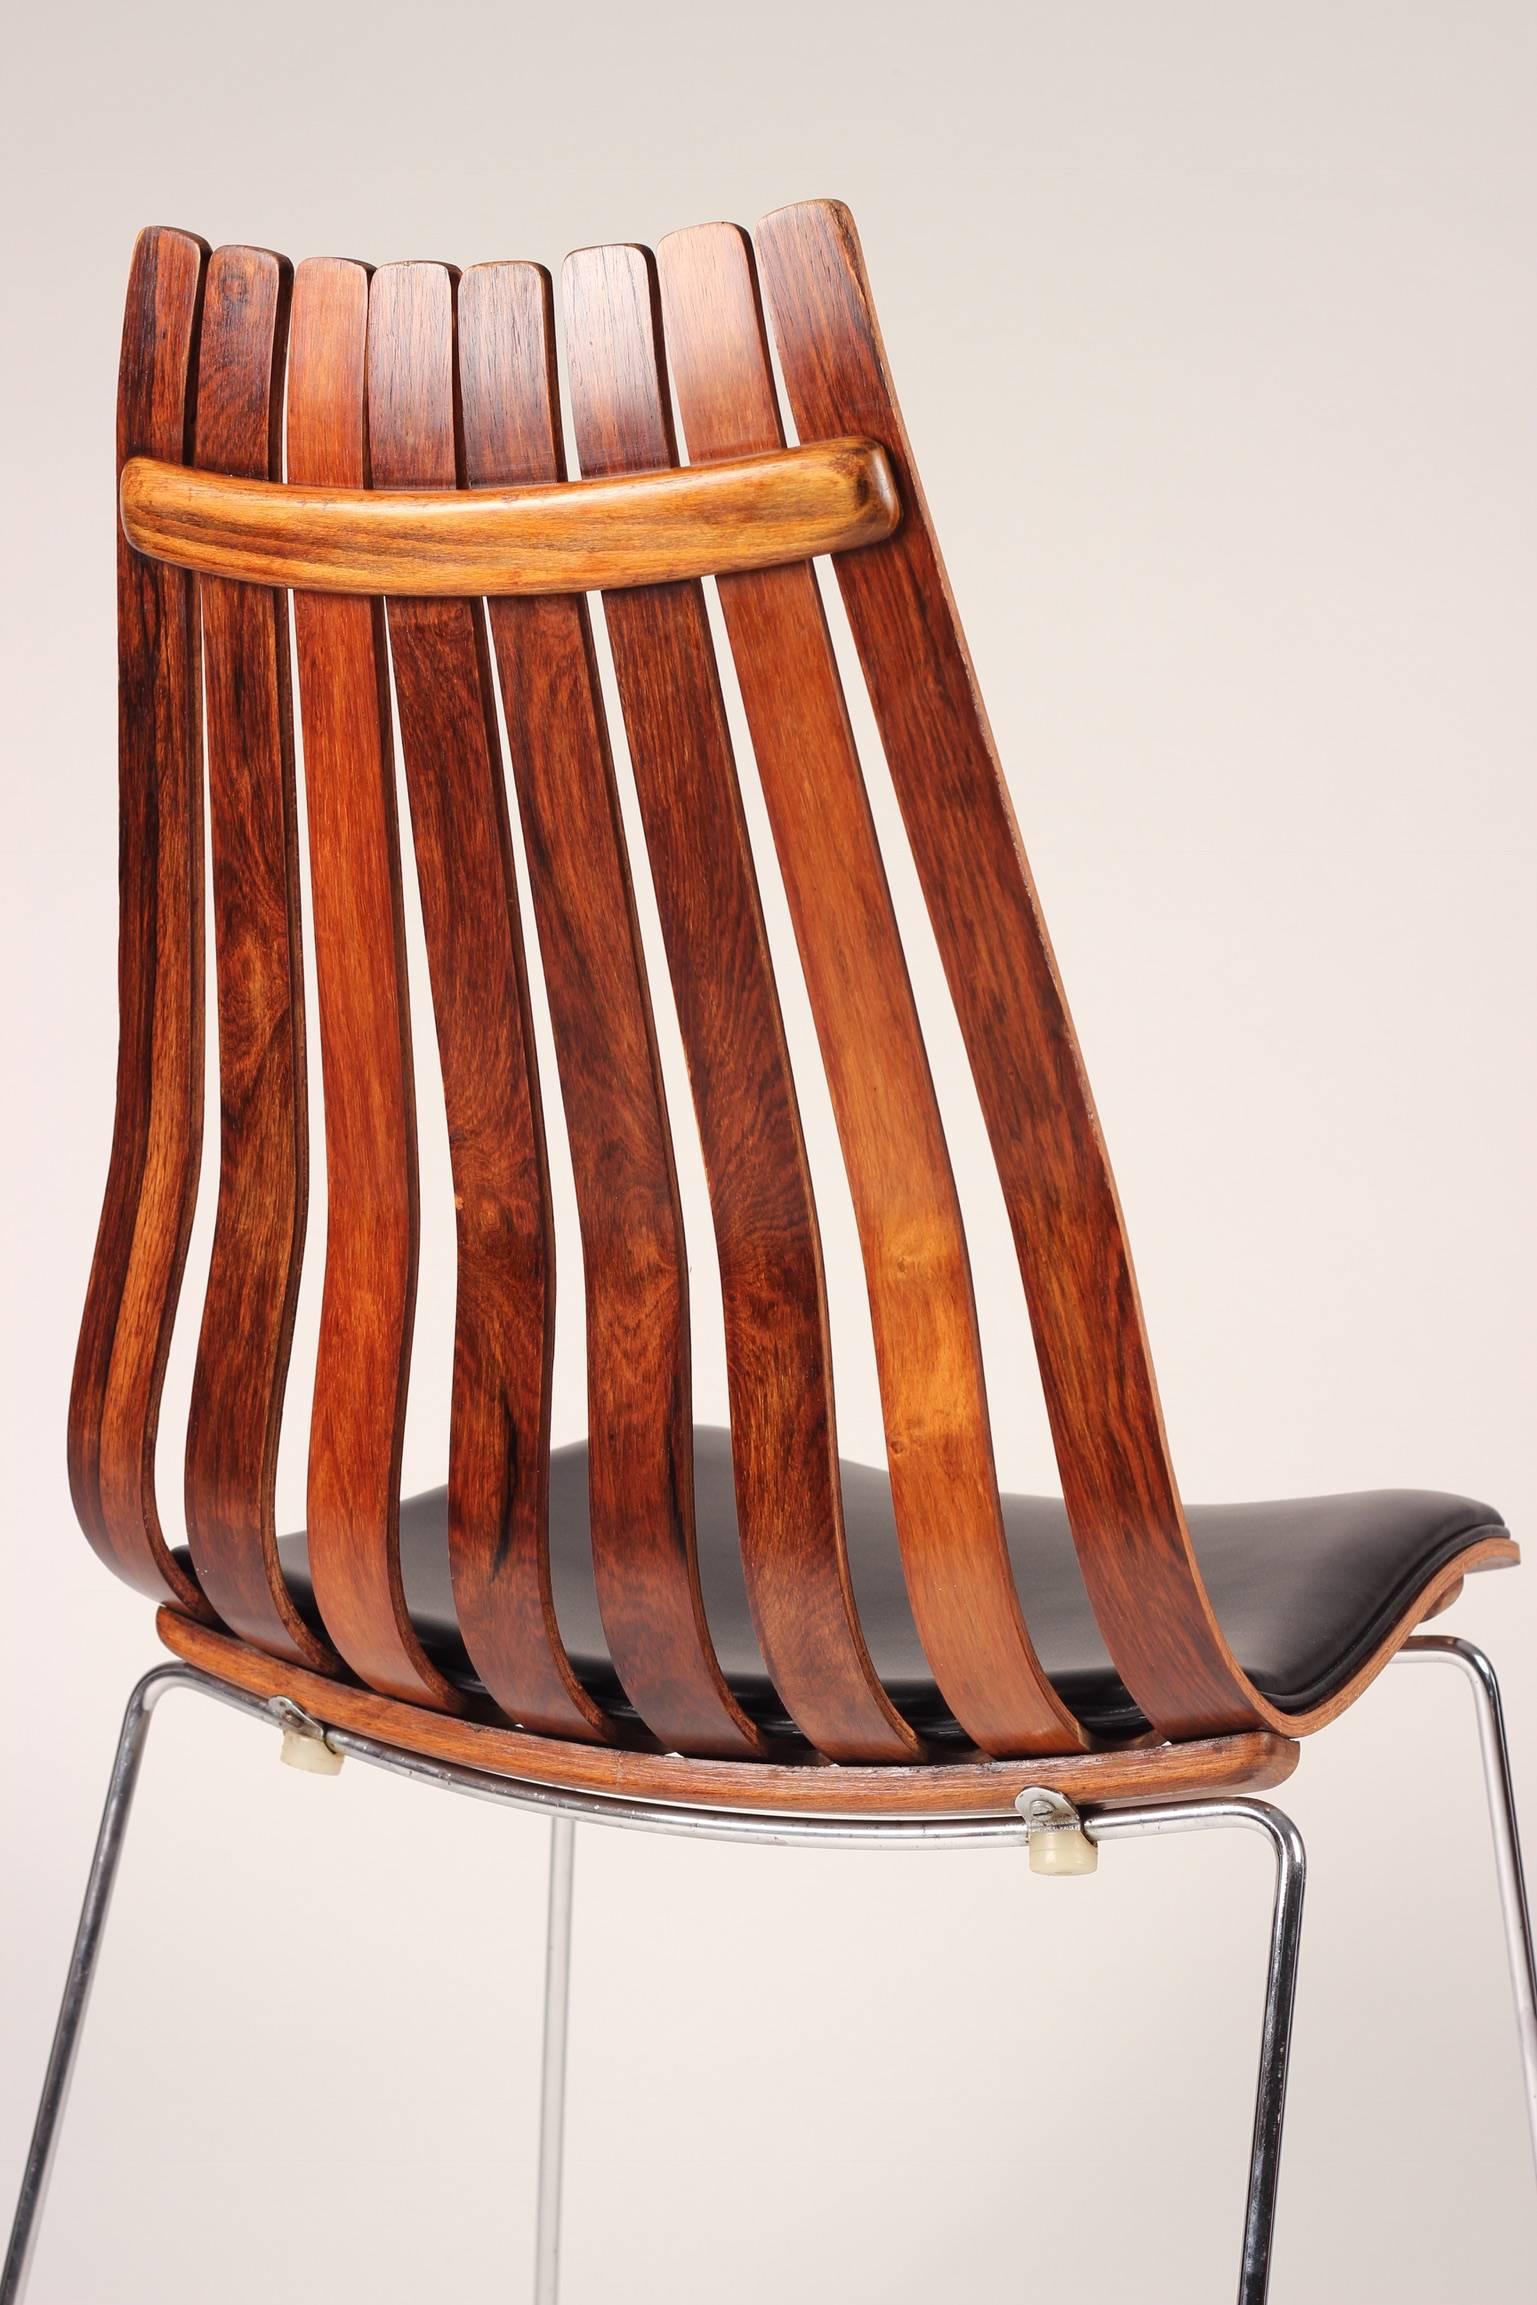 Ein Satz von sechs Hans Brattrud Scandia Senior Stühlen mit hoher Rückenlehne für Hove Mobler. Ein klassisches Beispiel für exzellentes skandinavisches modernes Design aus dem Jahr 1958, einer der schönsten Stühle, die nach dem Krieg in Norwegen und